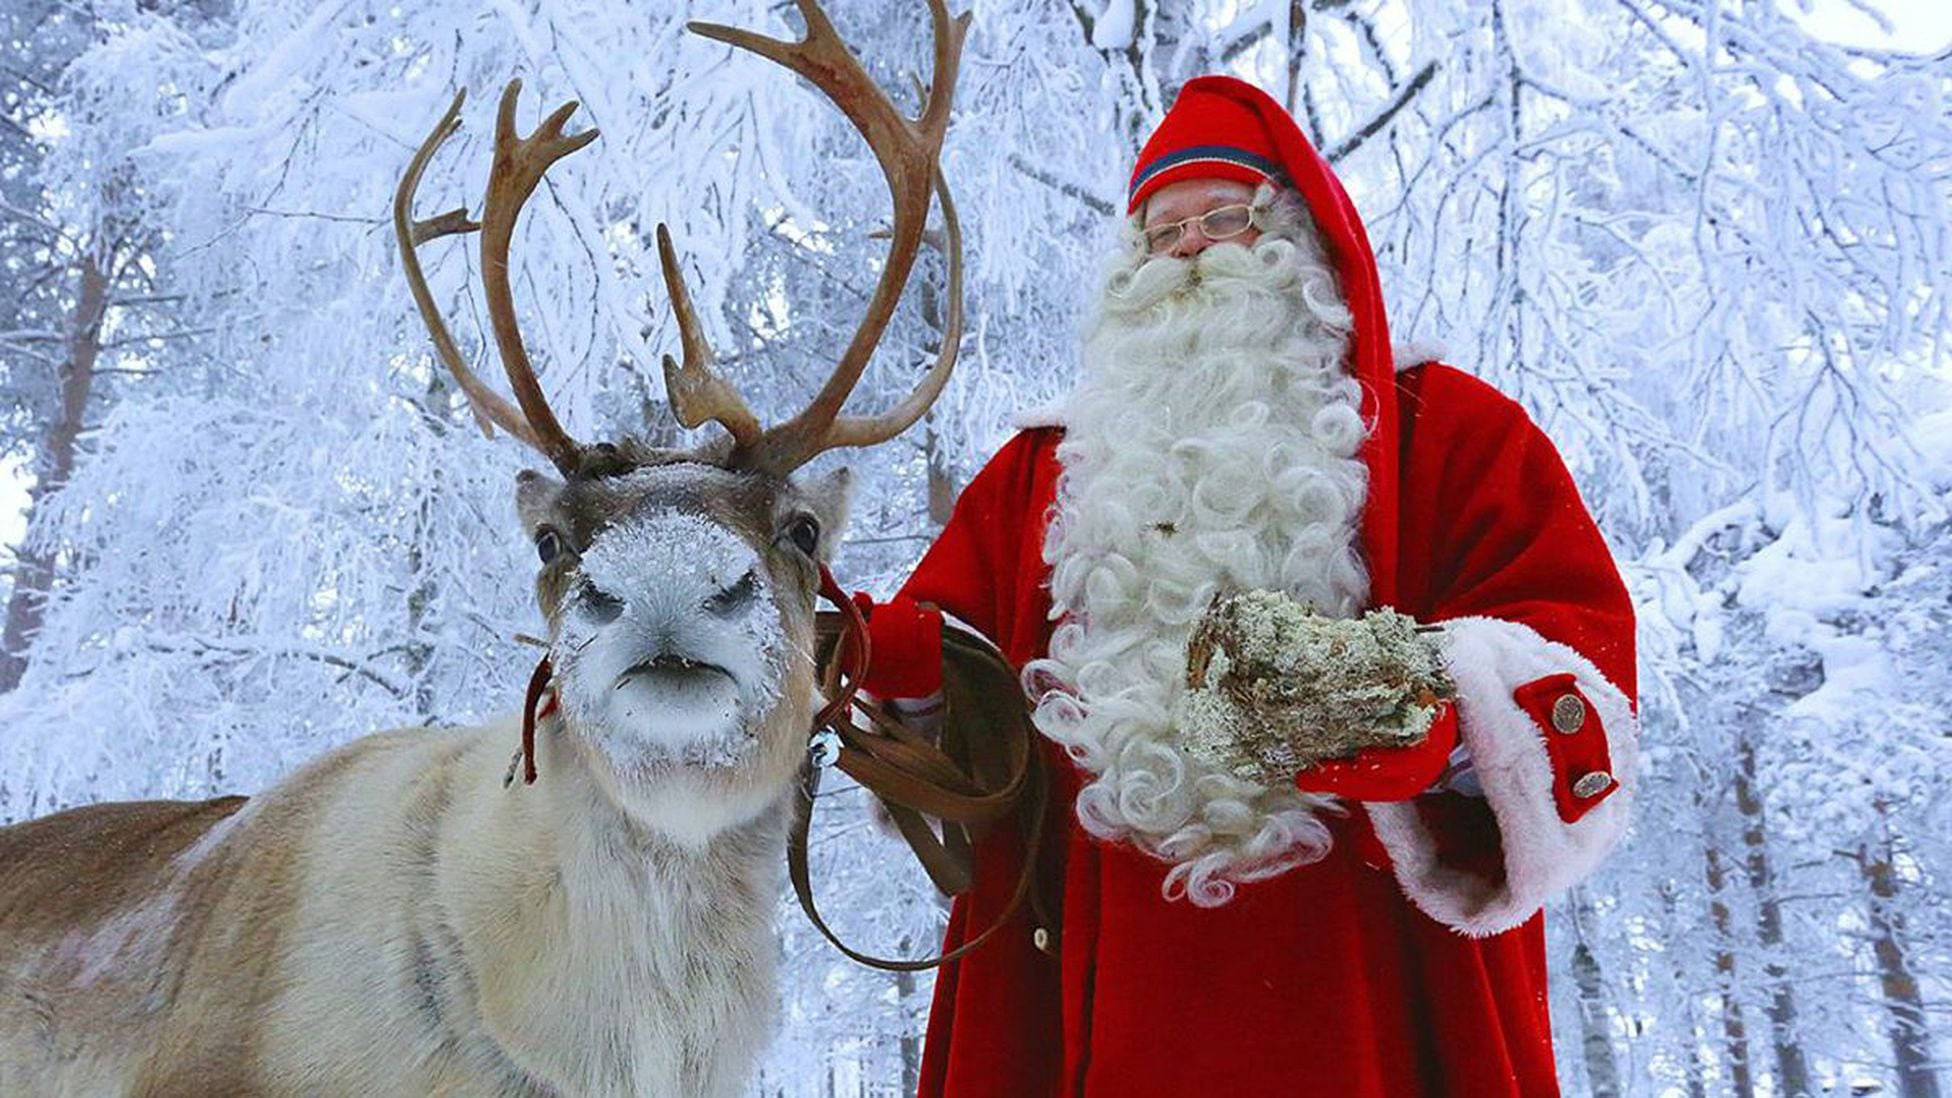 El pueblo de Papá Noel: el millonario imperio de Claus en Laponia - Tikitakas